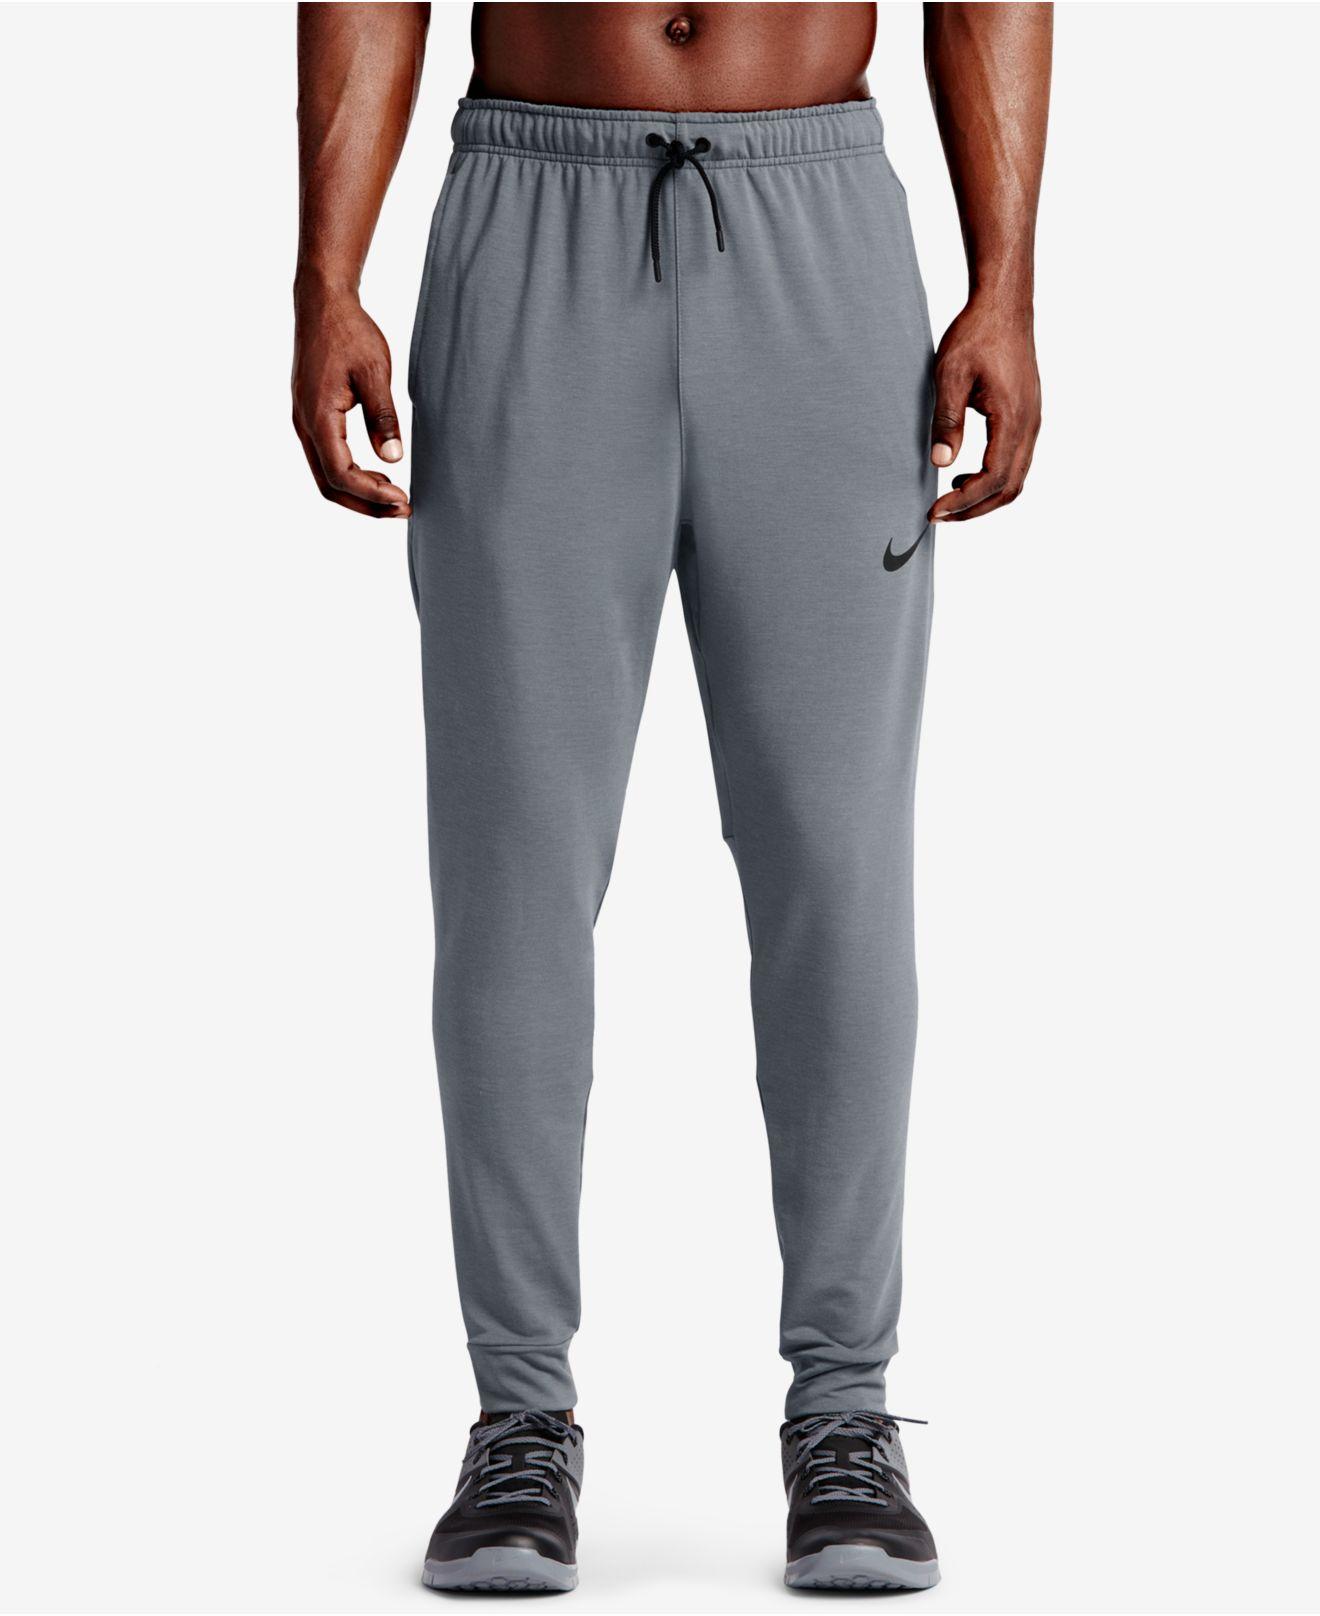 Lyst - Nike Dri-fit Fleece Pants in Gray for Men